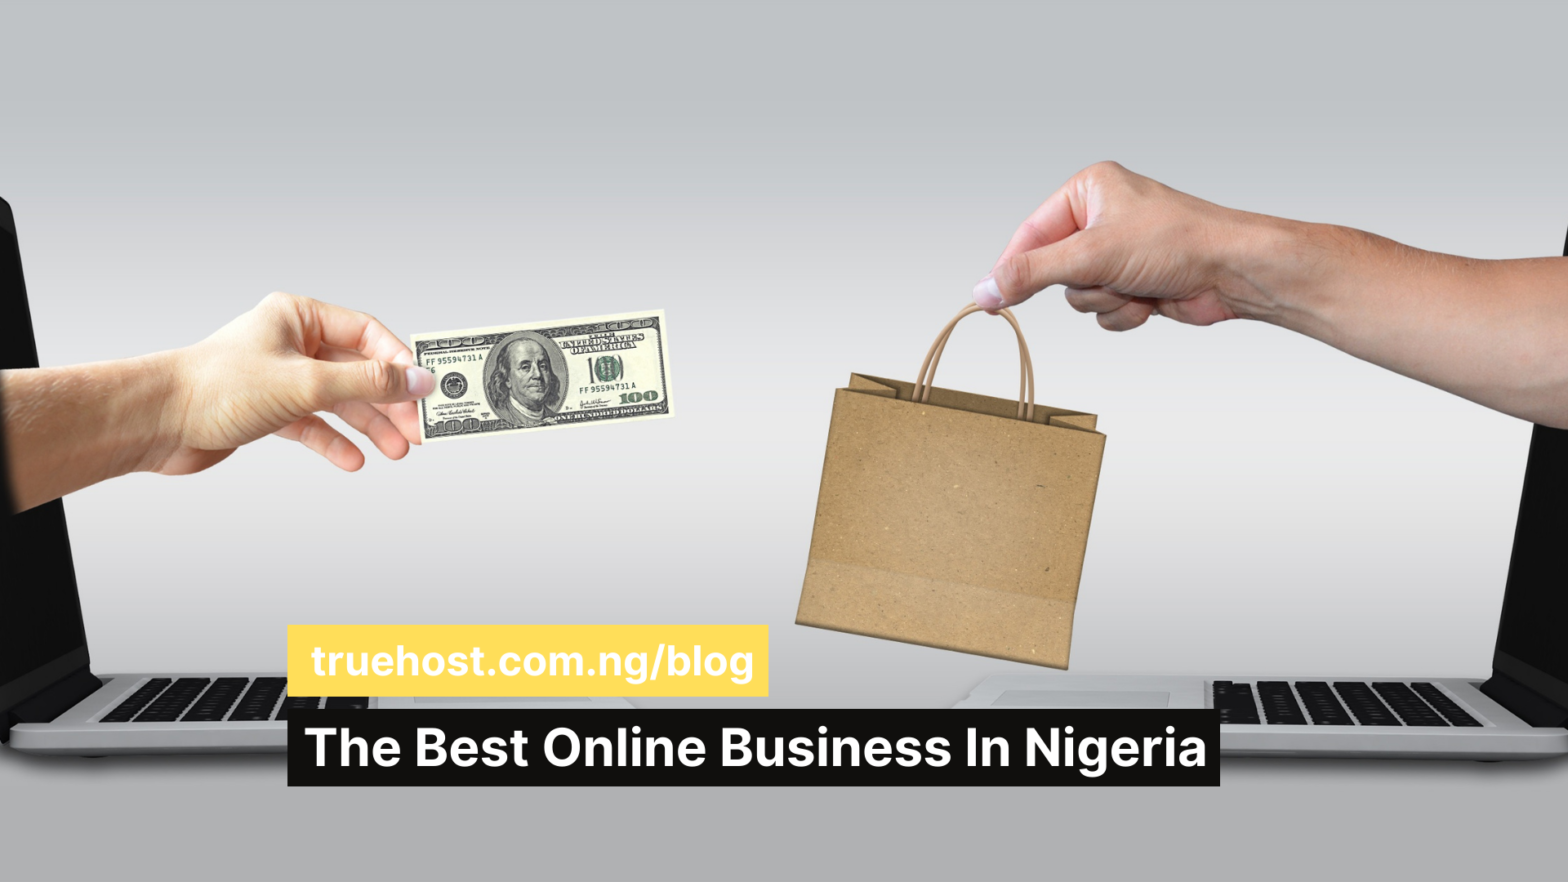 Online business in Nigeria